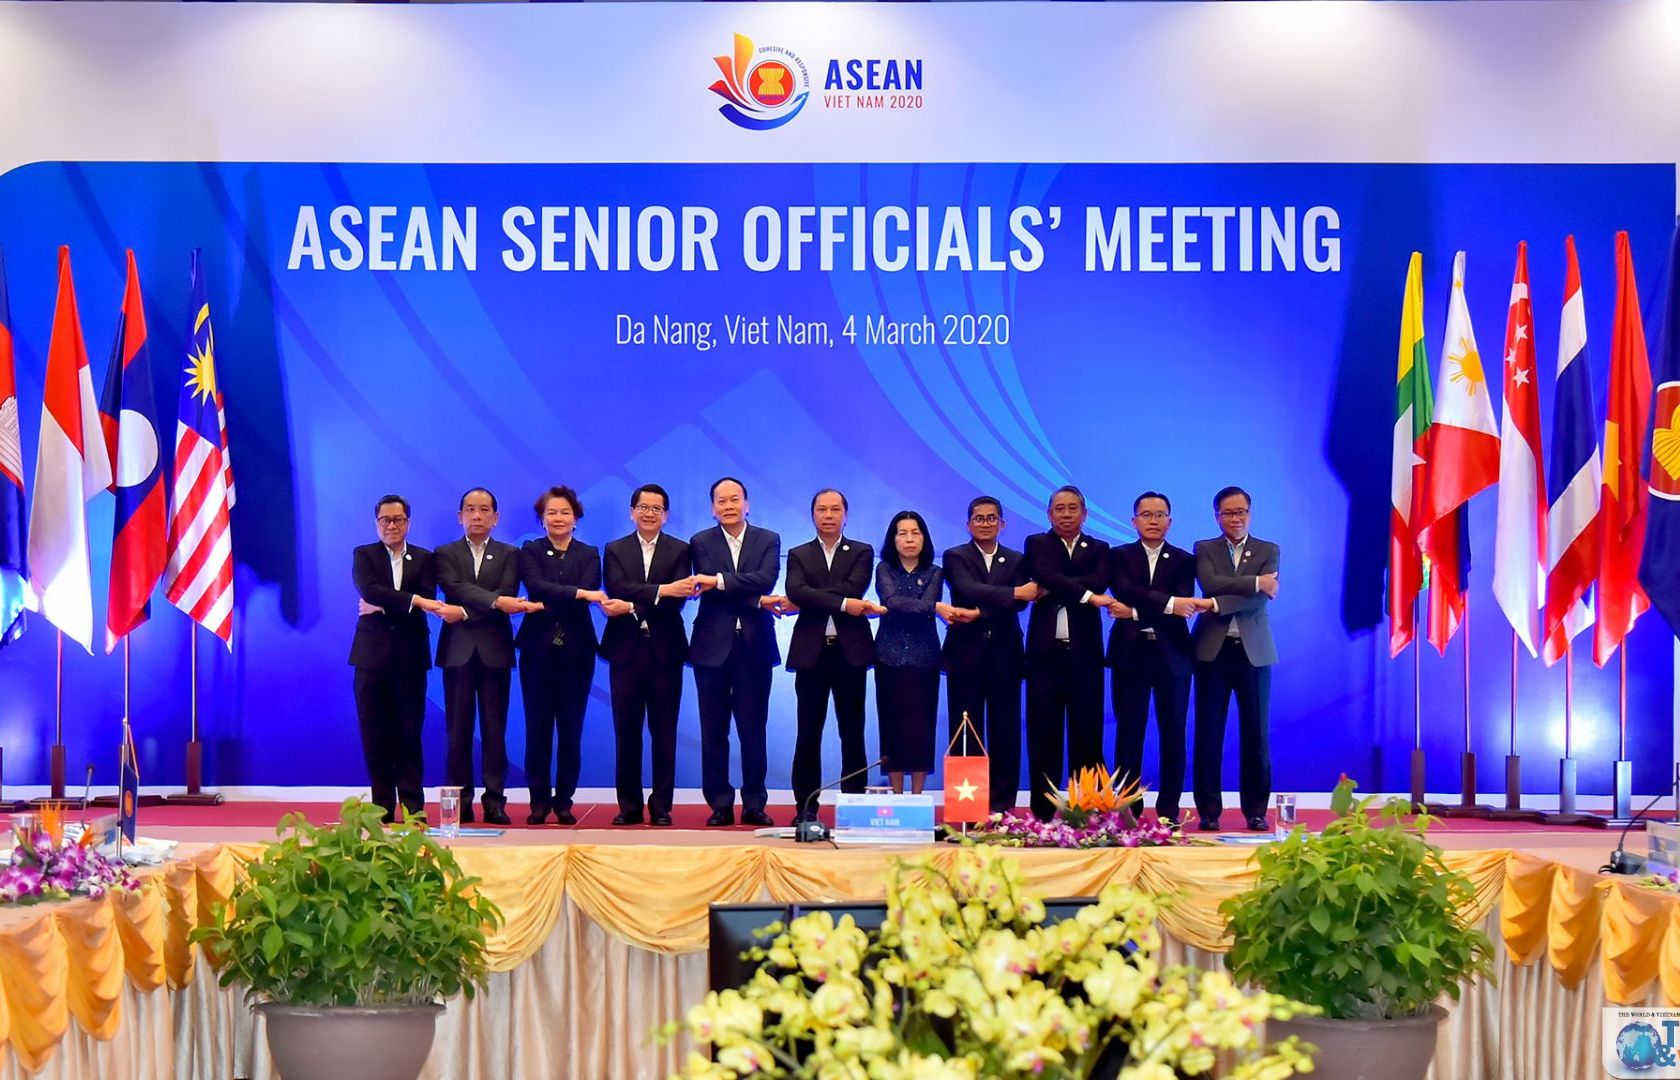 Khai mạc Hội nghị Quan chức cao cấp ASEAN và các Hội nghị liên quan